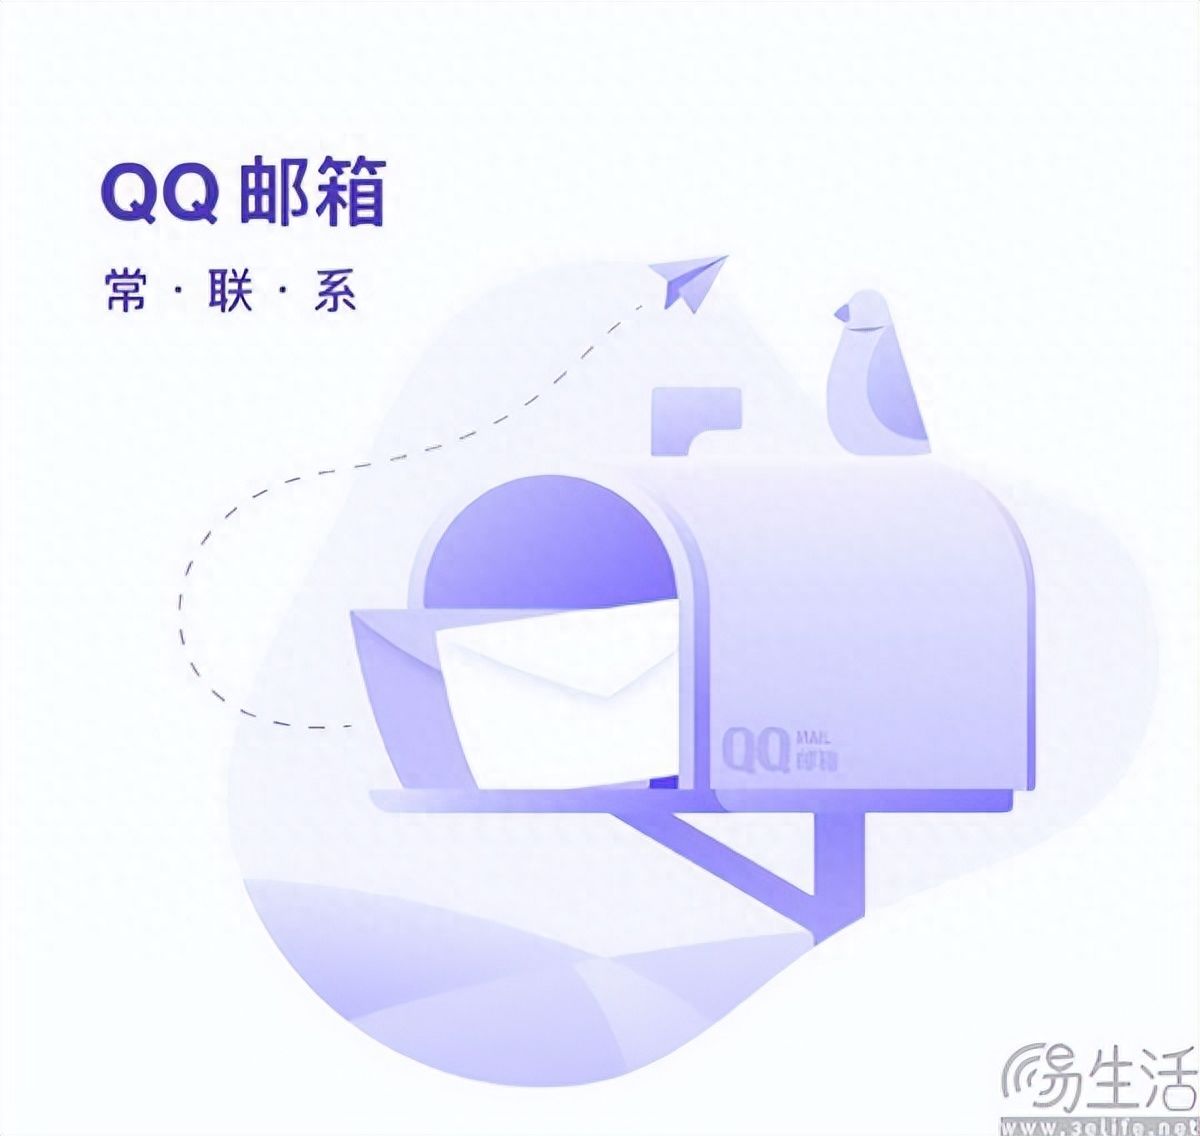 不挣钱就要被砍的重压下，QQ邮箱也开始卖会员了